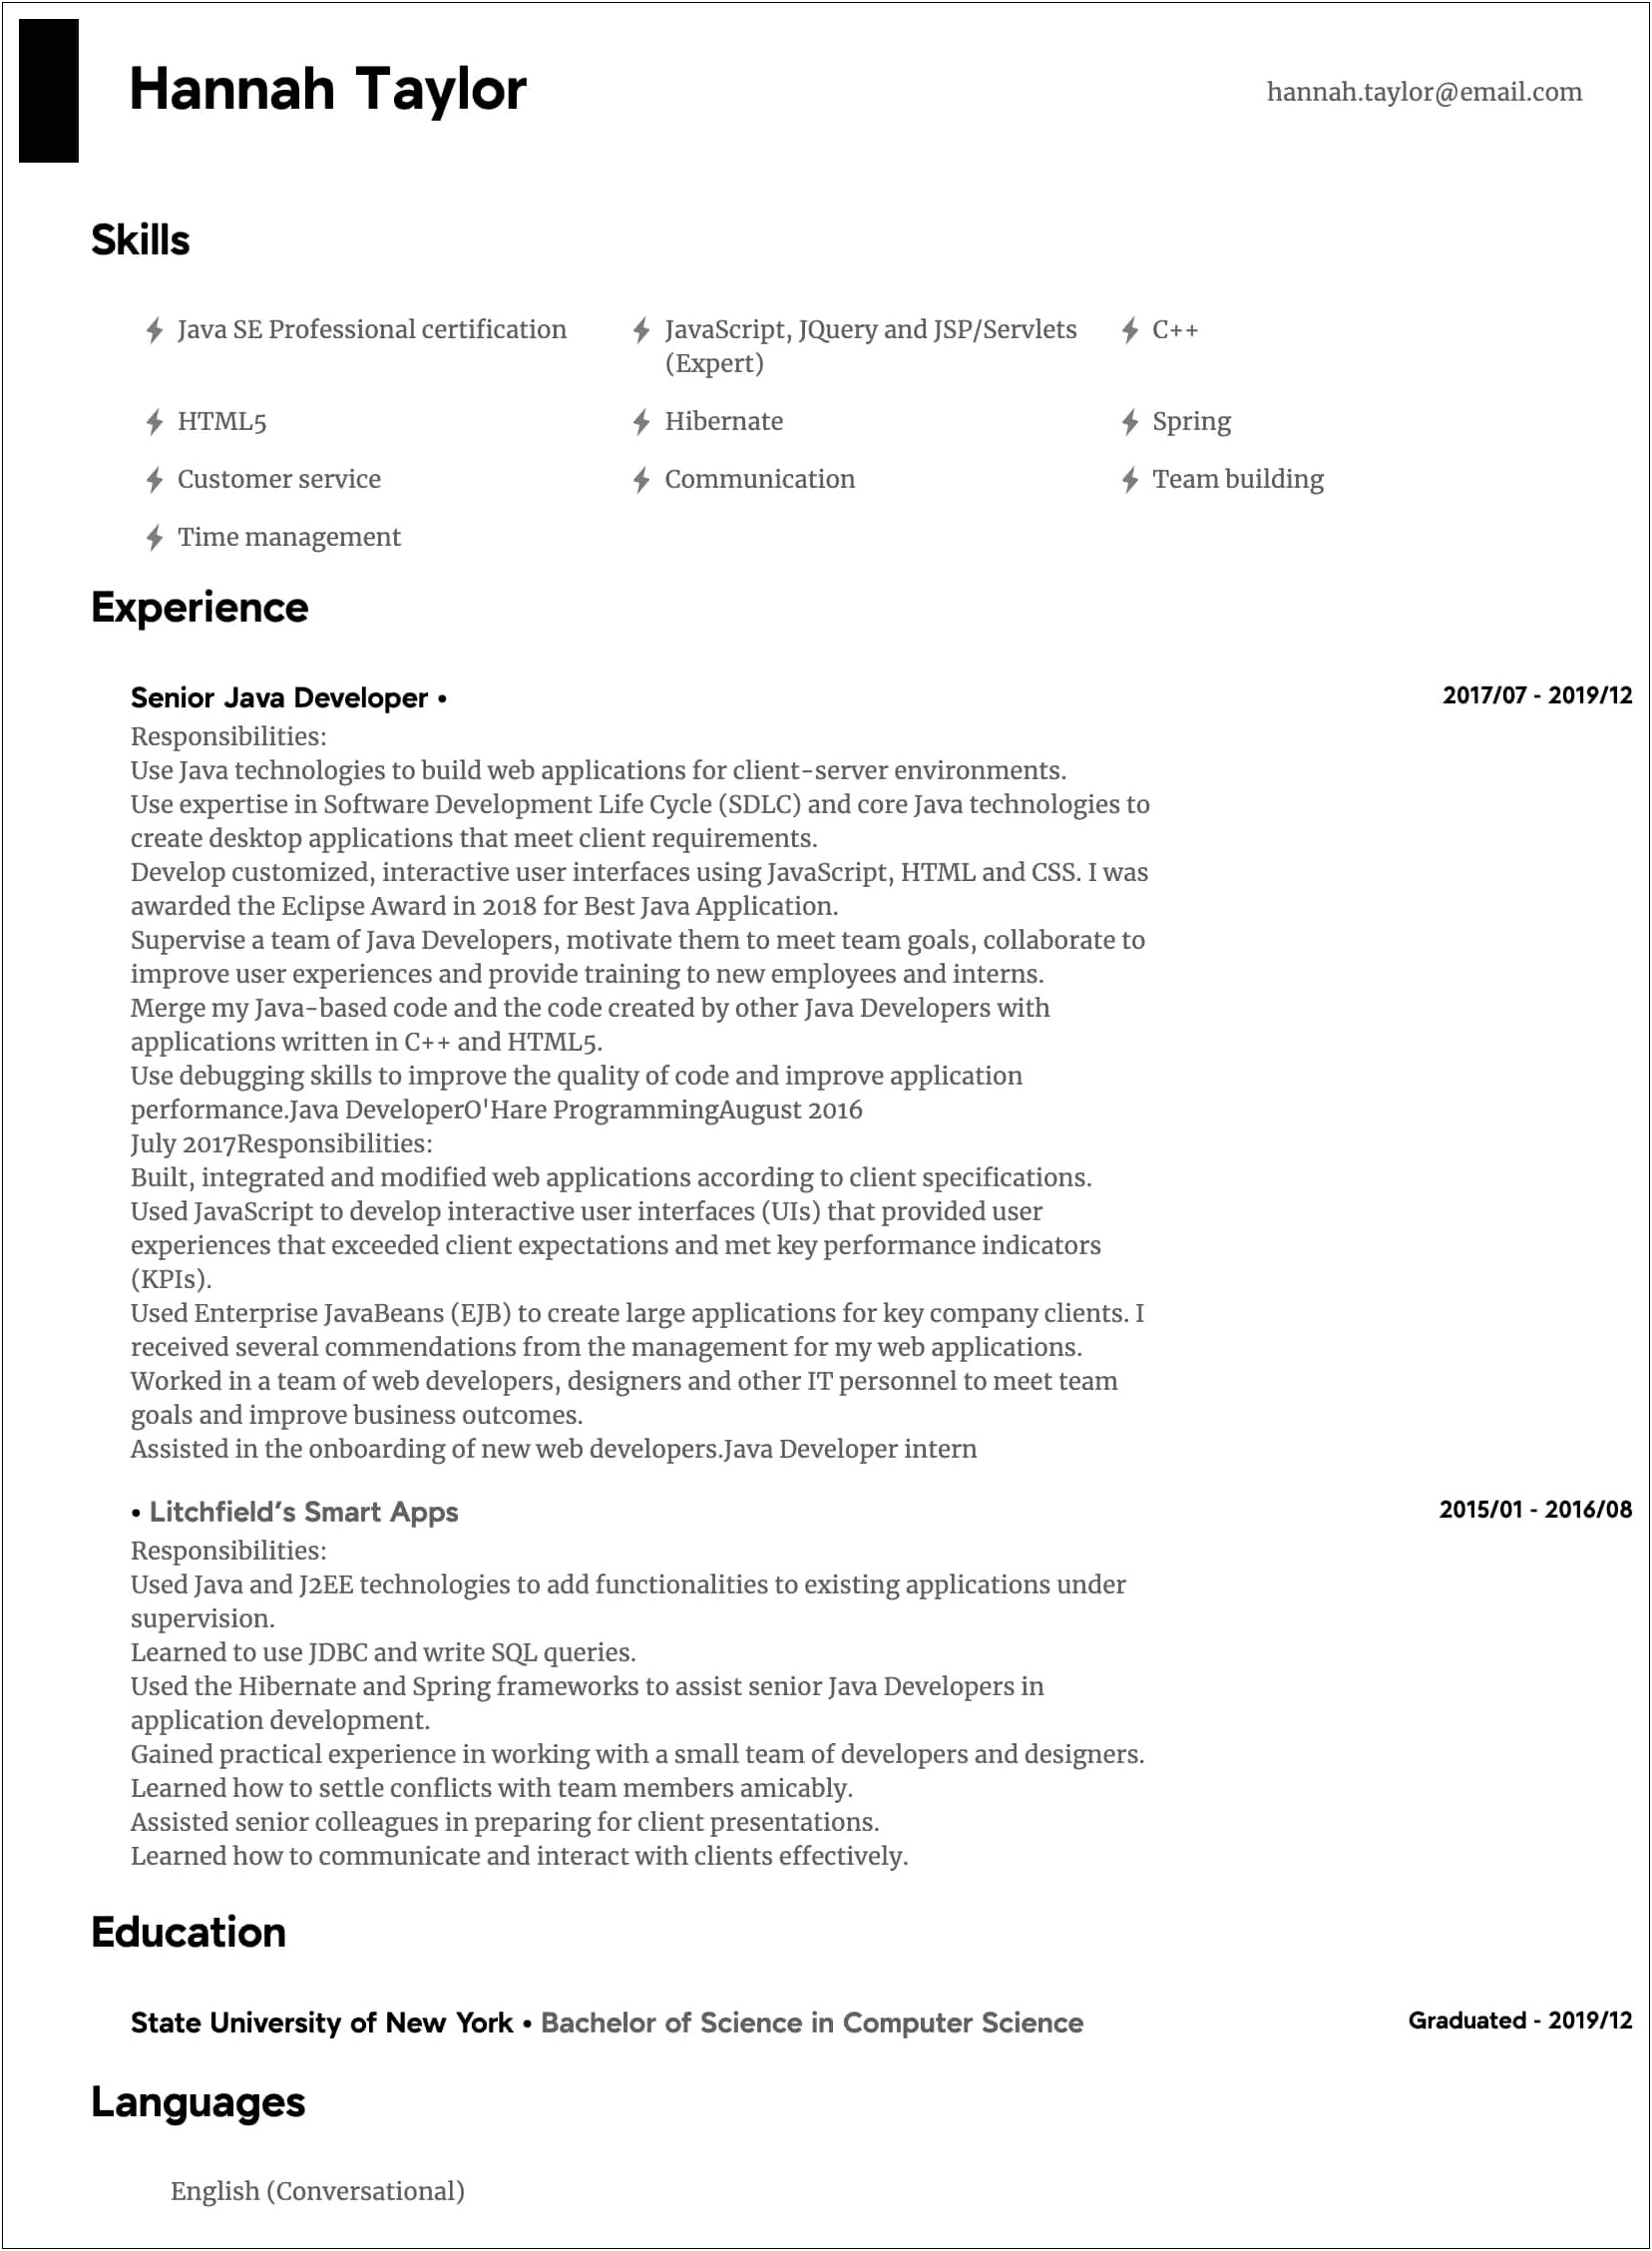 Best Resume For Developer Experienced